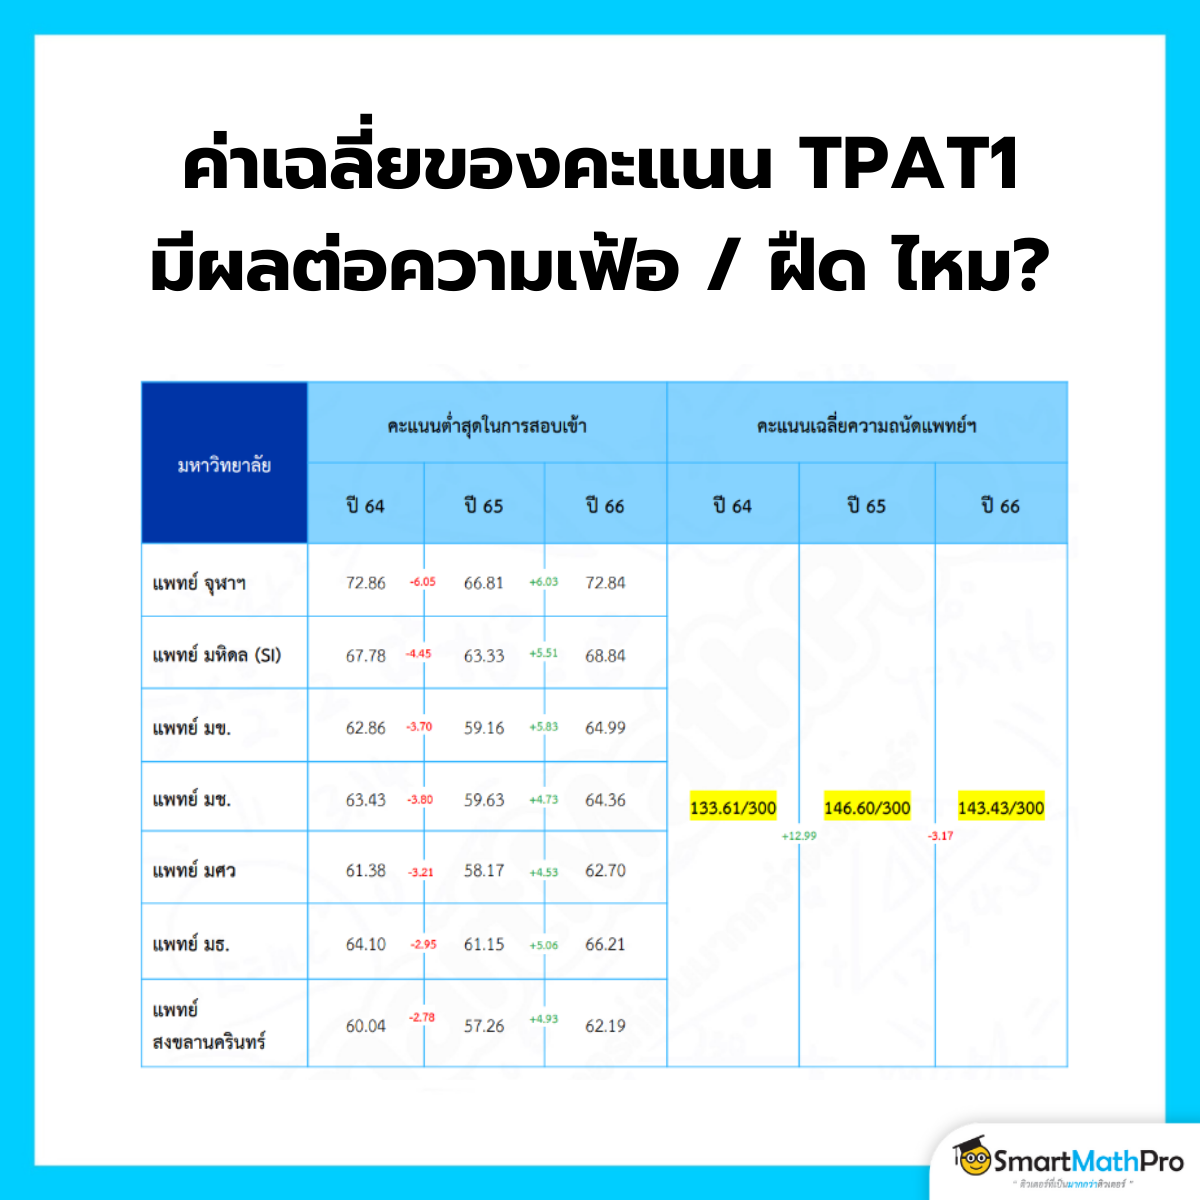 ค่าเฉลี่ยคะแนน TPAT1 กสพท 67 เมื่อเทียบกับคะแนนของปี 63-66